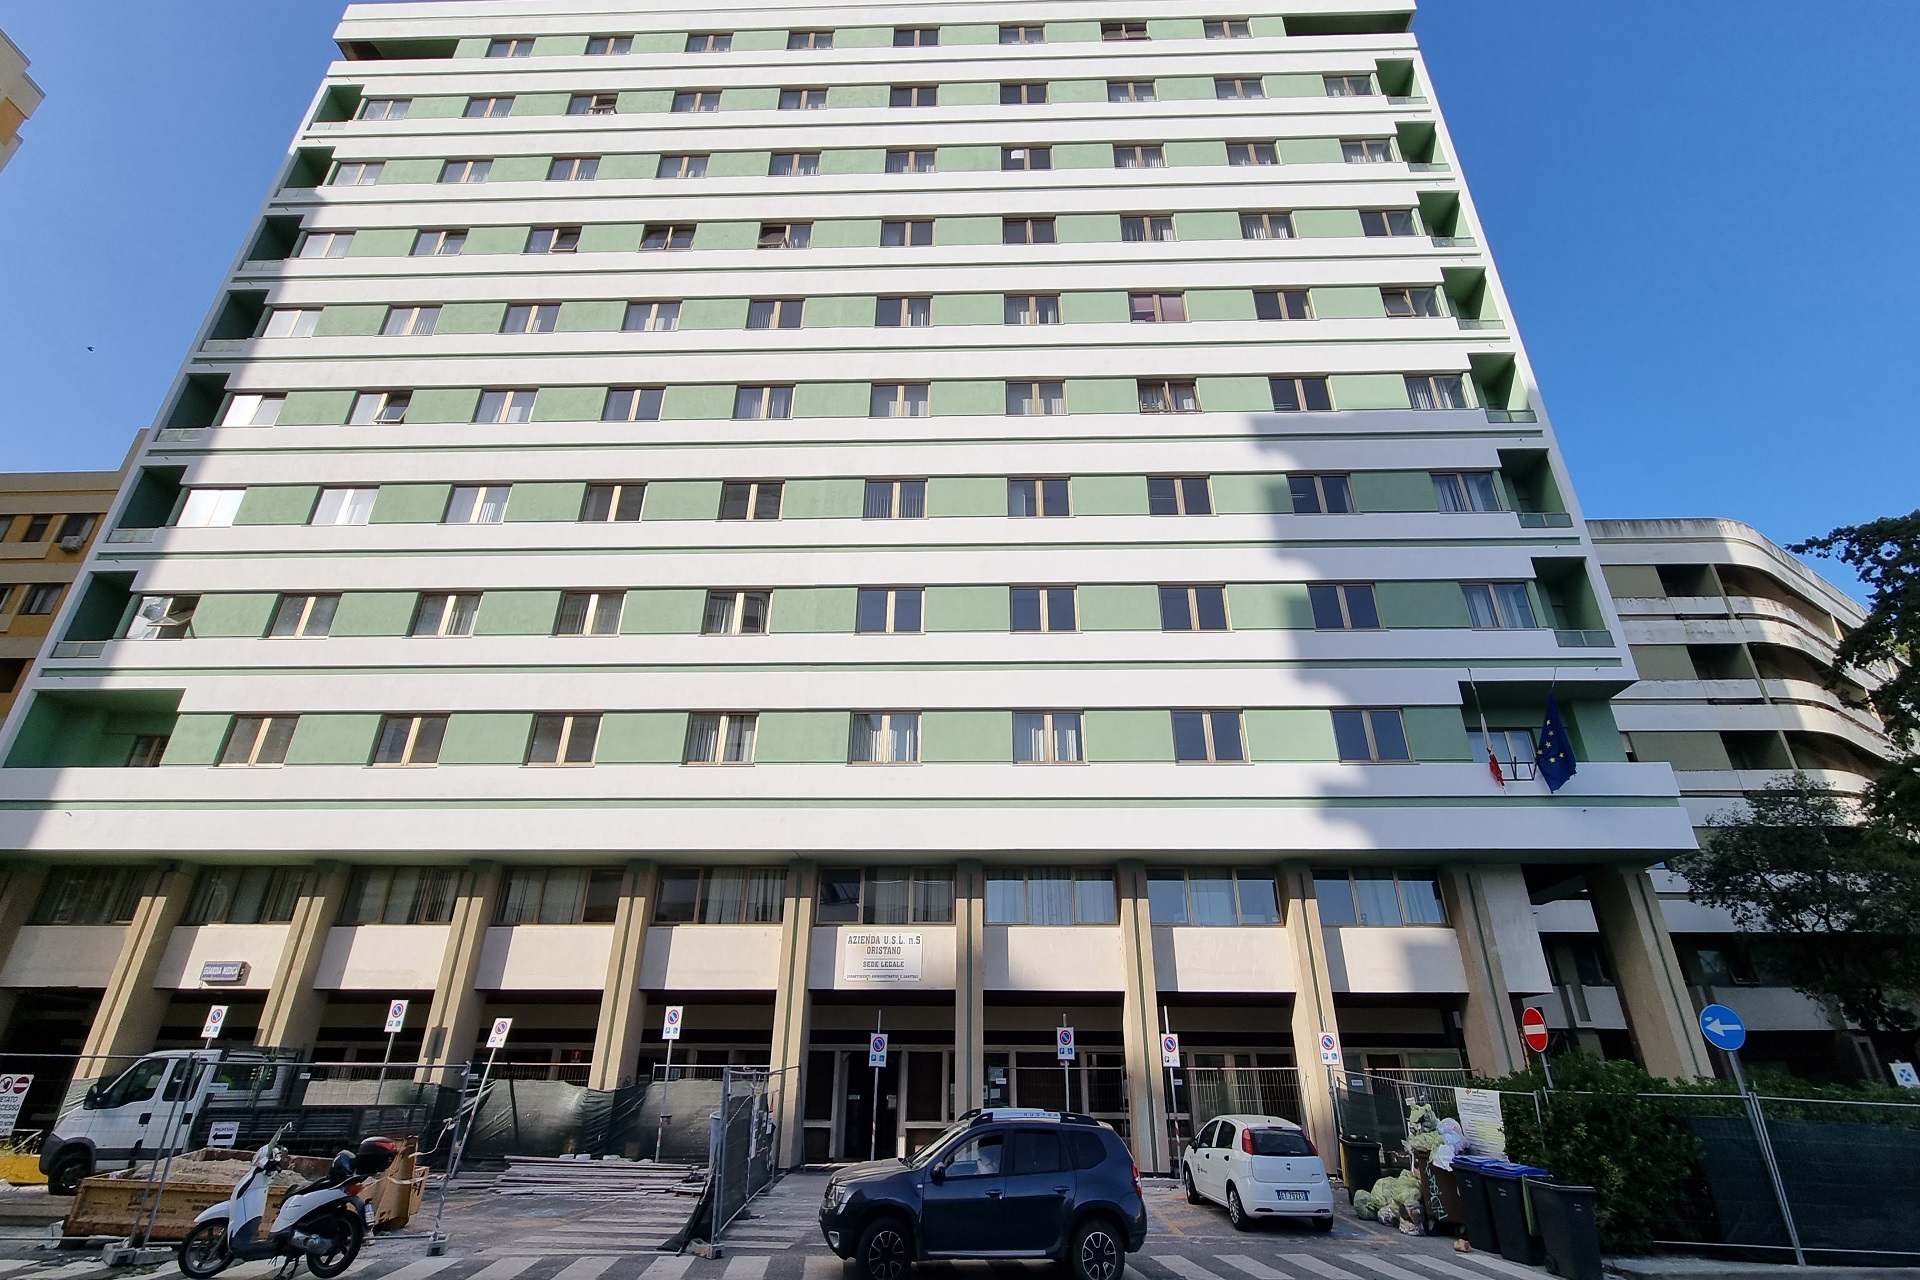 Asl di Oristano, uffici amministrativi chiusi lunedì 14 agosto